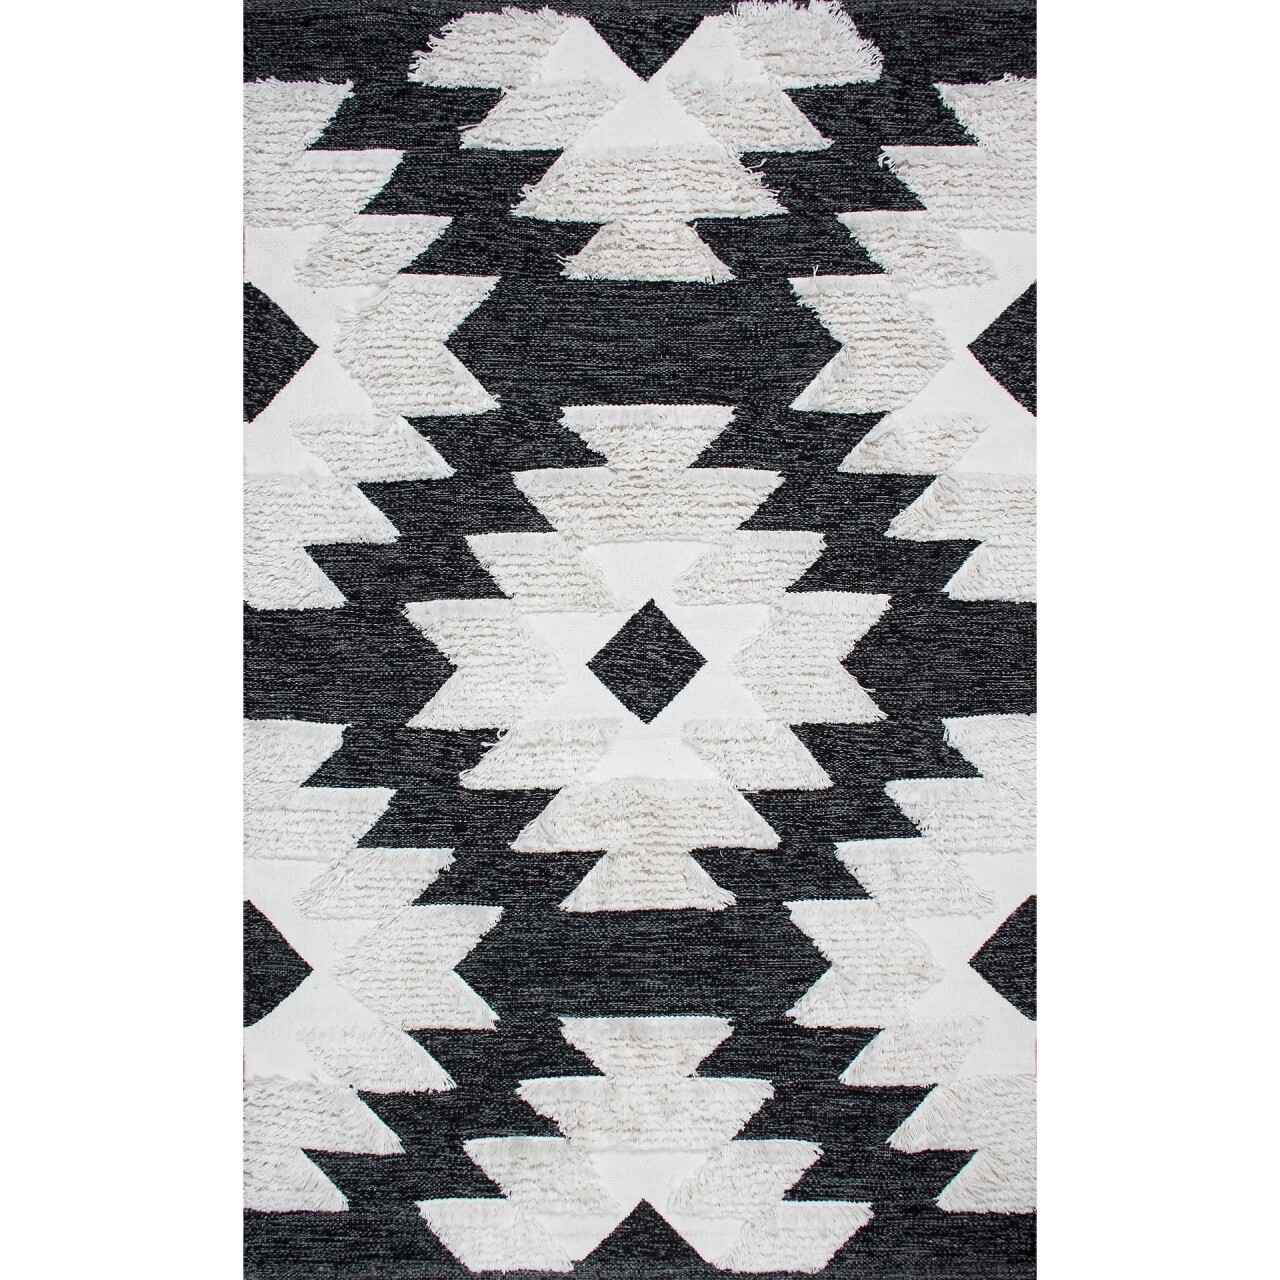 Eko környezetálló szőnyeg, afr 01 - black, white, 100% pamut, 120 x 180 cm